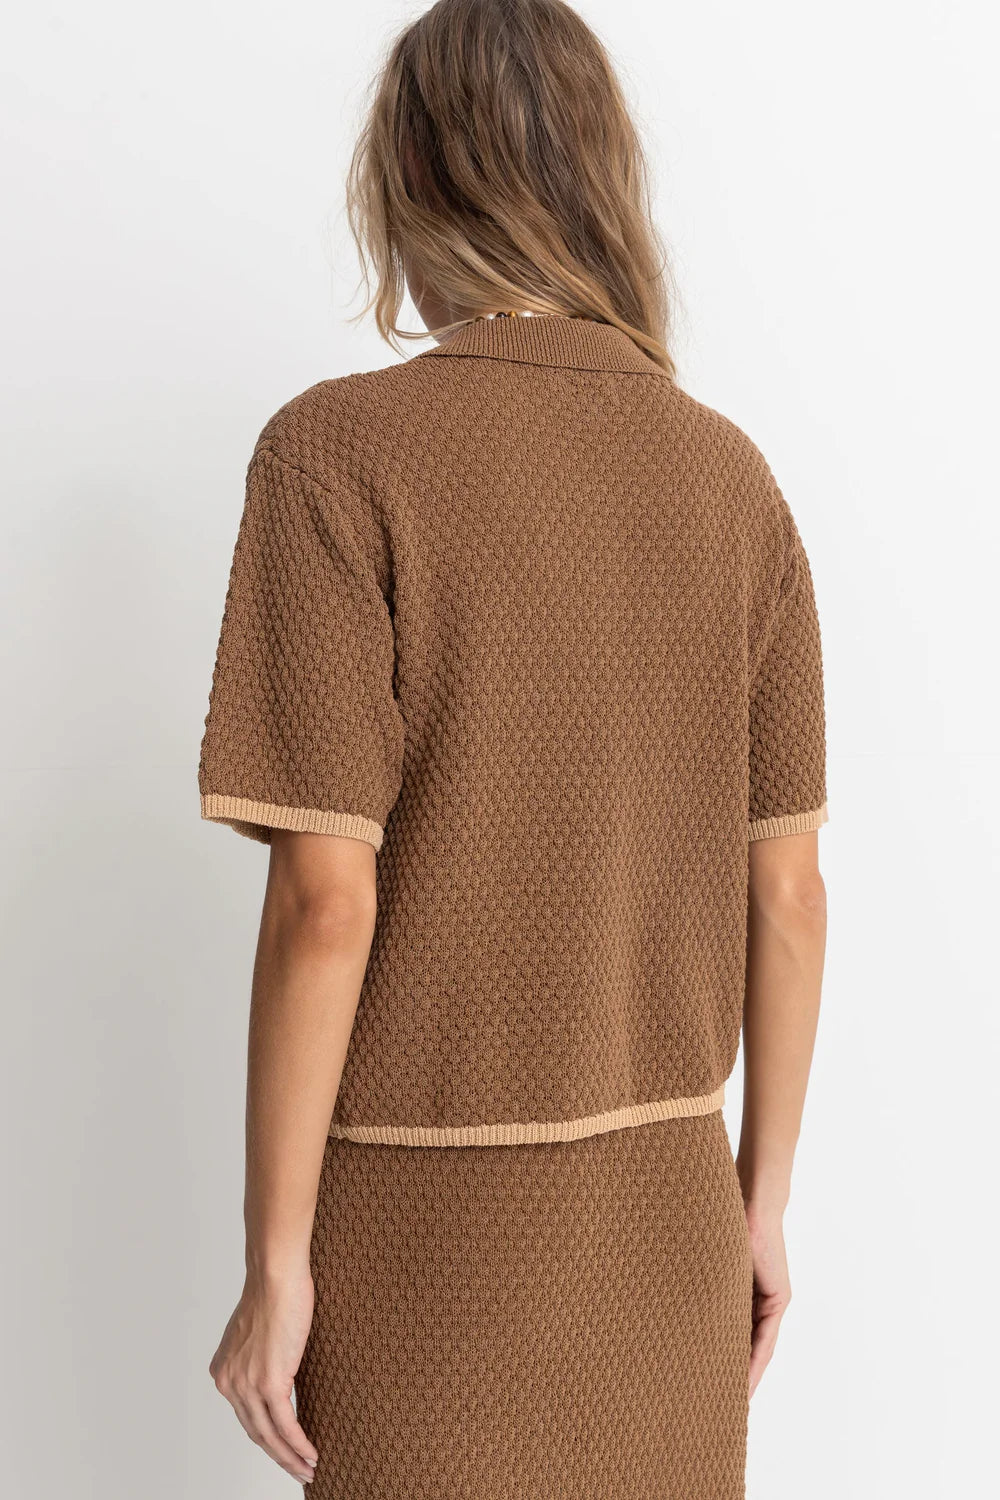 Rhythm Joni Short Sleeve Knit Shirt- Chocolate